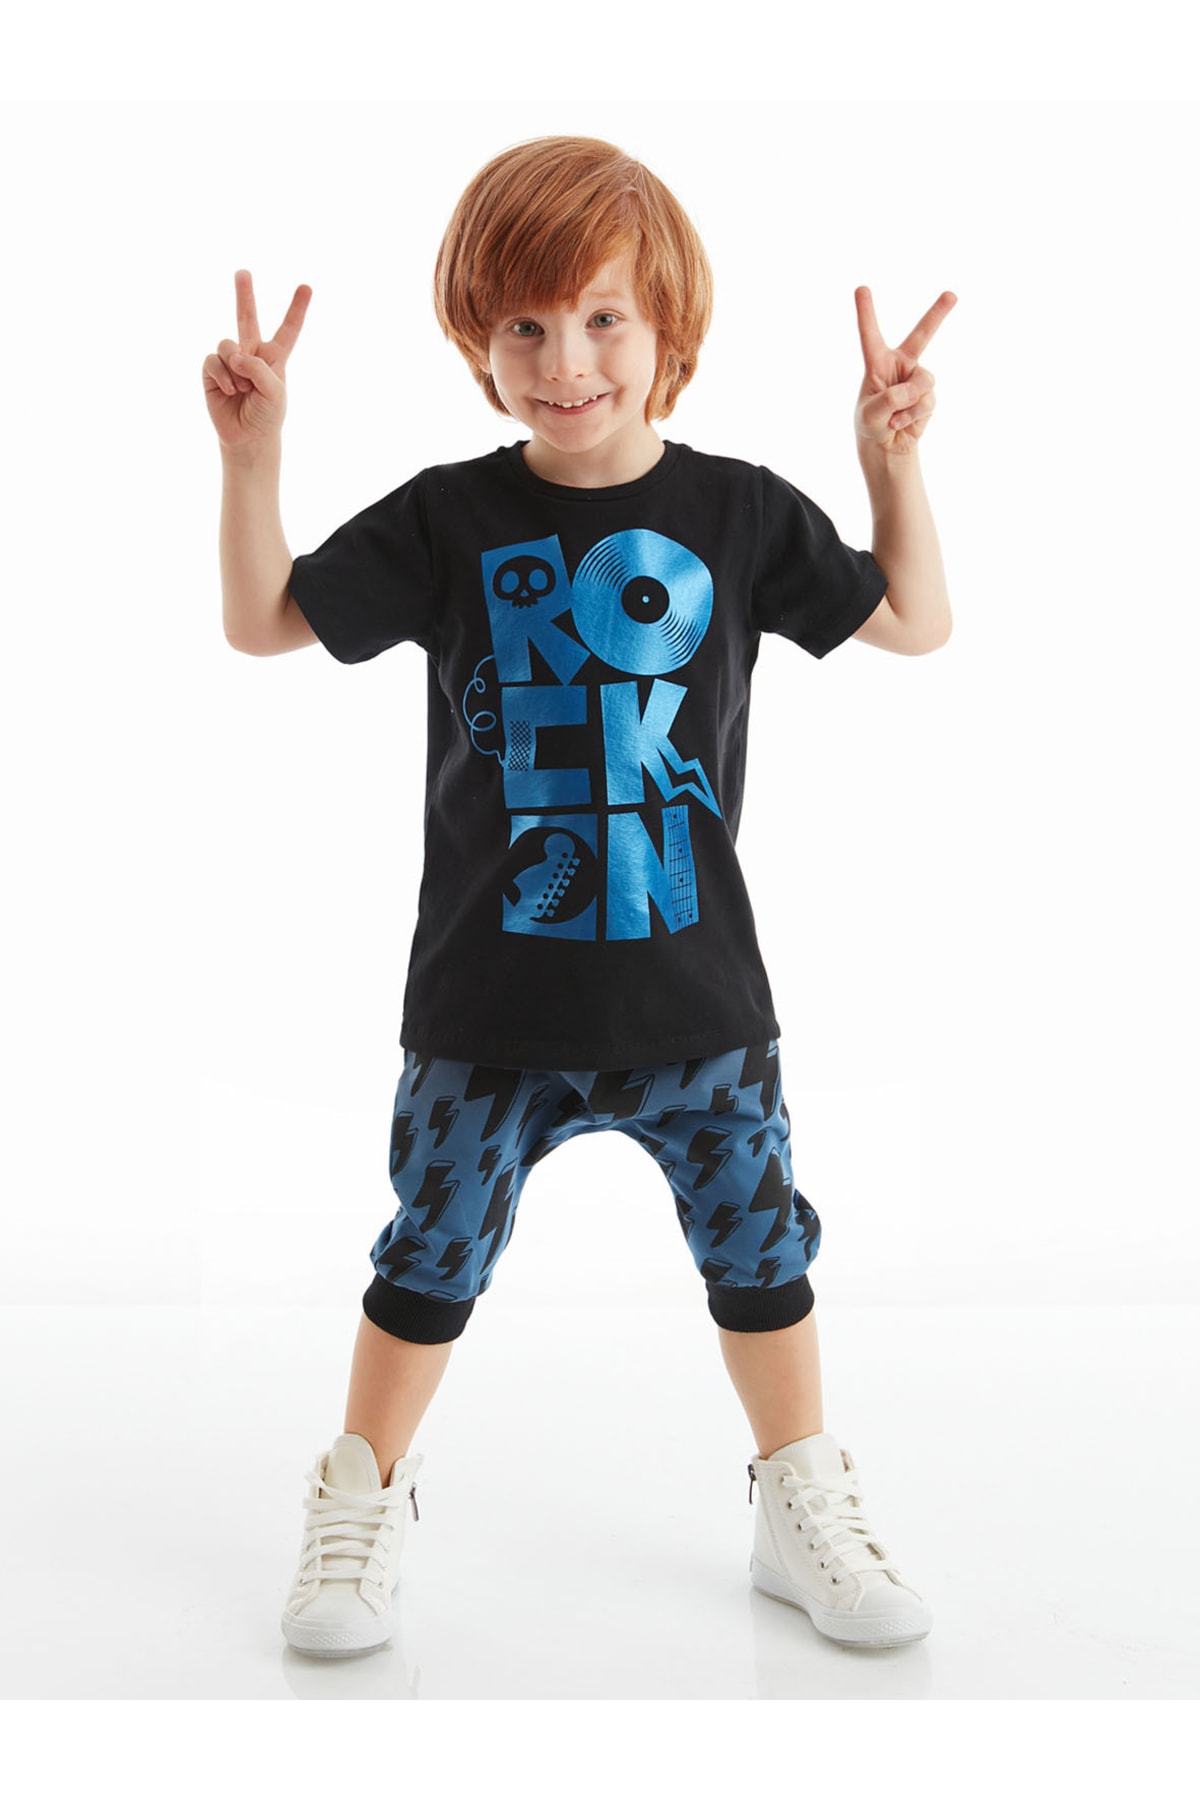 Denokids Rock On Boys T-shirt Capri Shorts Set